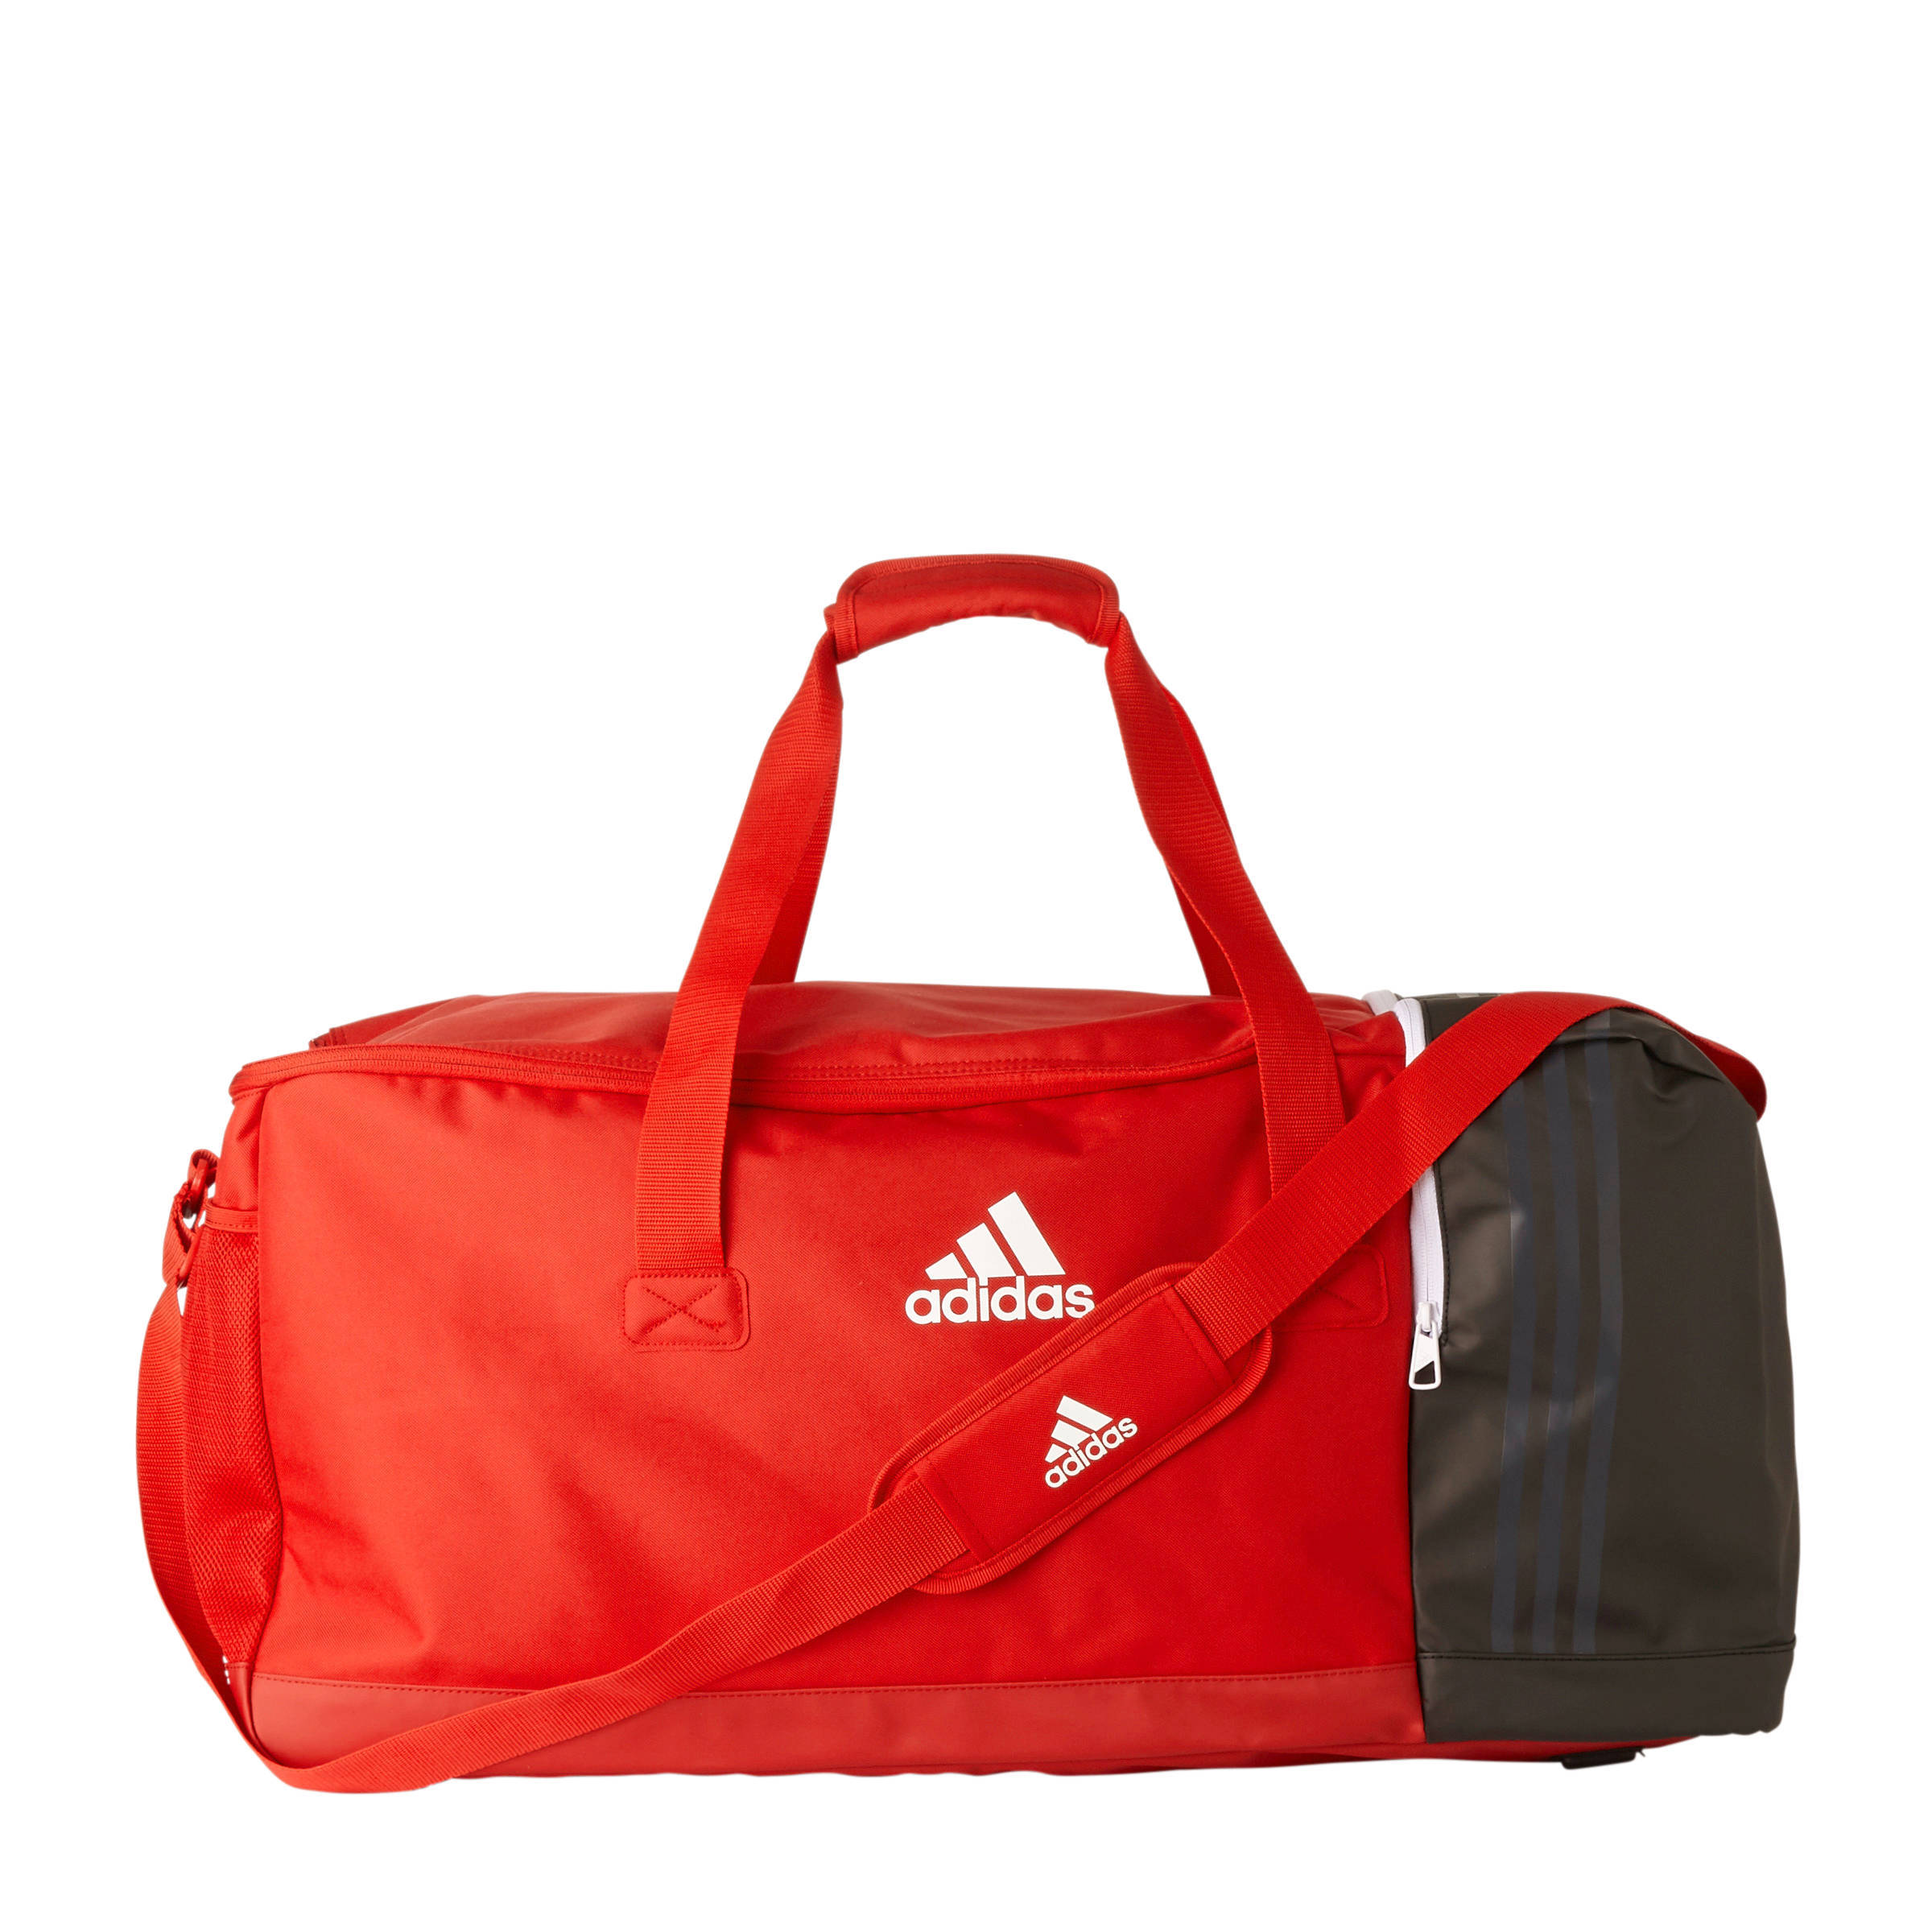 sports direct adidas gym bag